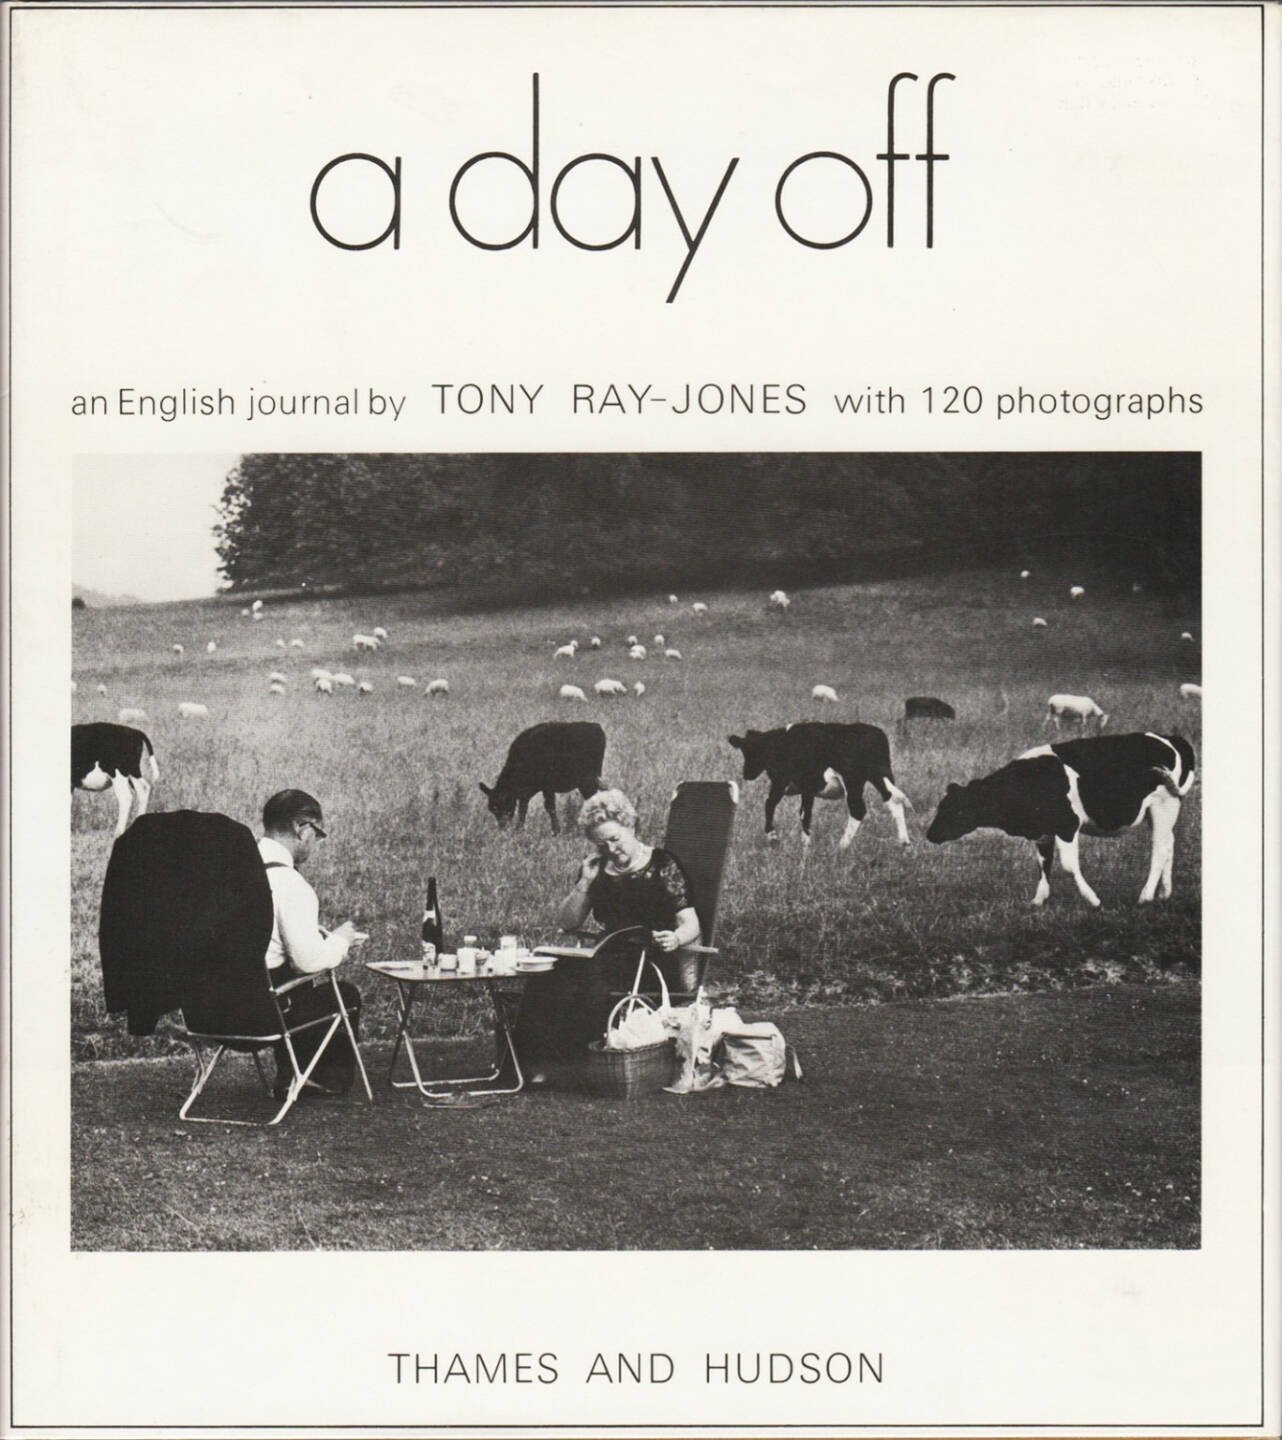 Tony Ray-Jones - A day off 250-300 Euro - http://josefchladek.com/book/tony_ray-jones_-_a_day_off